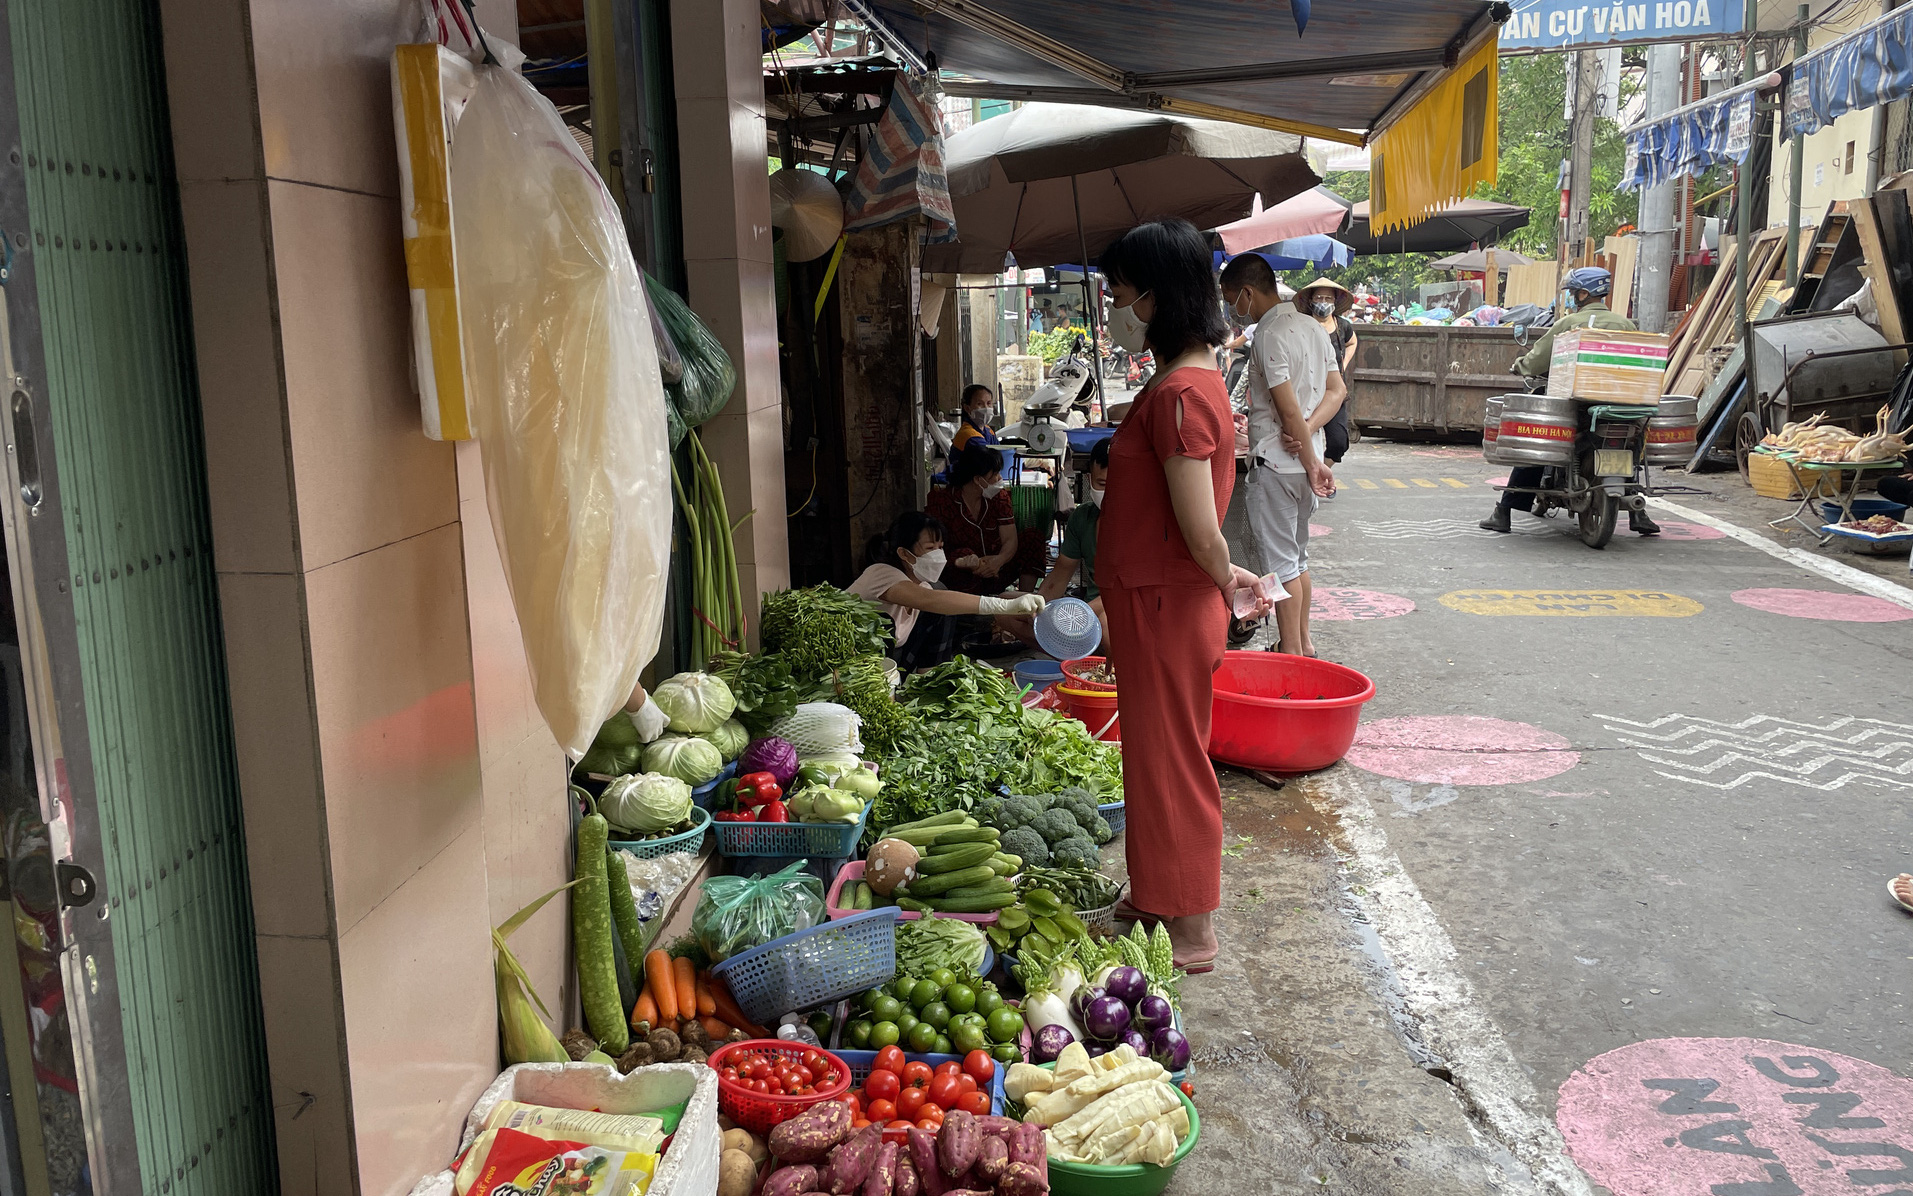 Video: Người dân khó bỏ thói quen túm tụm mua hàng ở chợ truyền thống